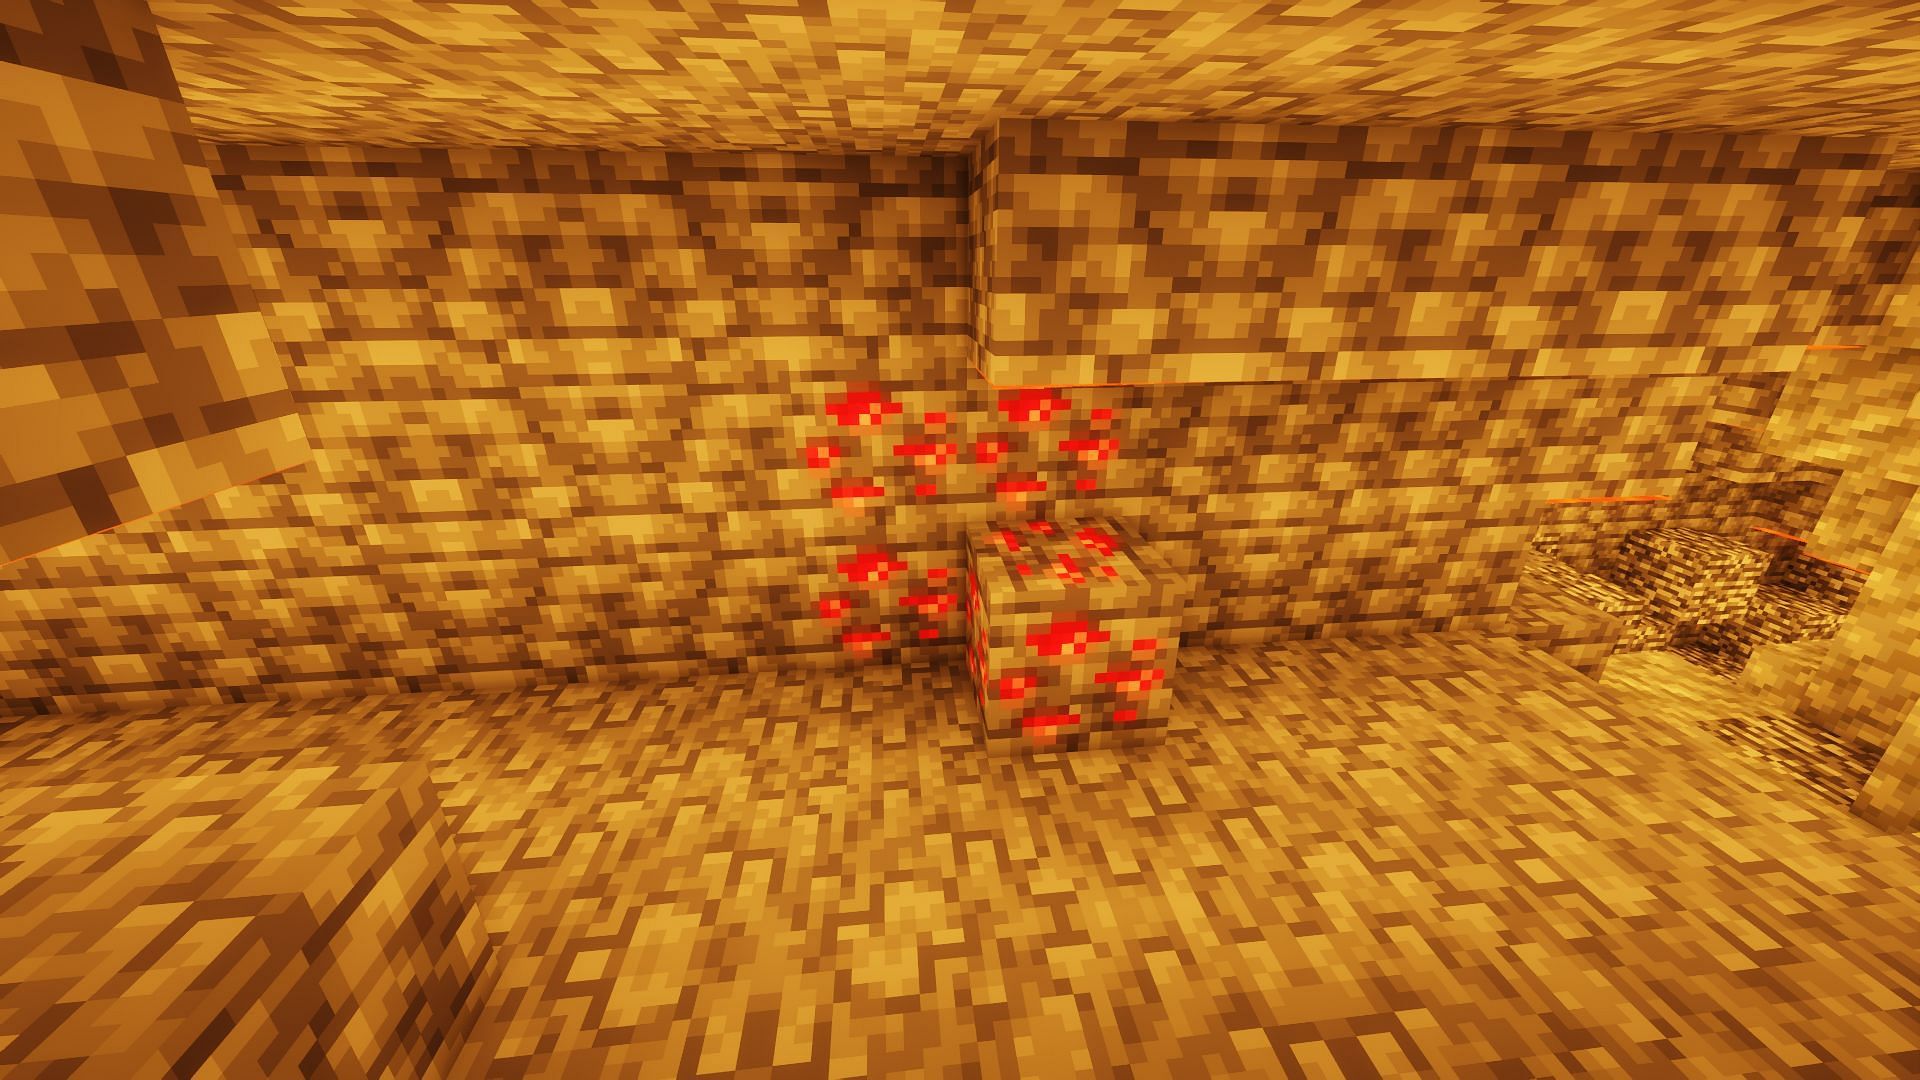 Redstone ore found underground (Image via Minecraft)